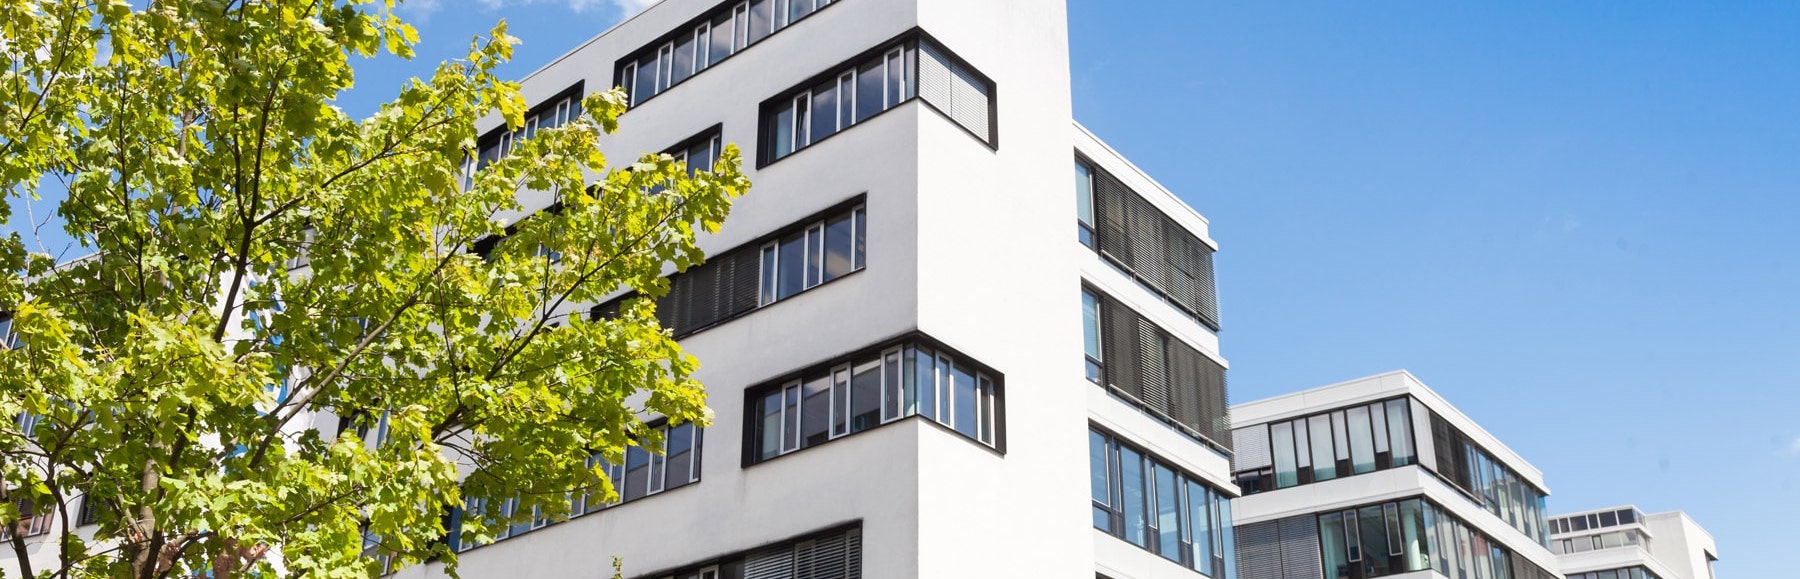 Hochhaus, modernes Bürogebäude in Deutschland - Borkenhagen Immobilien